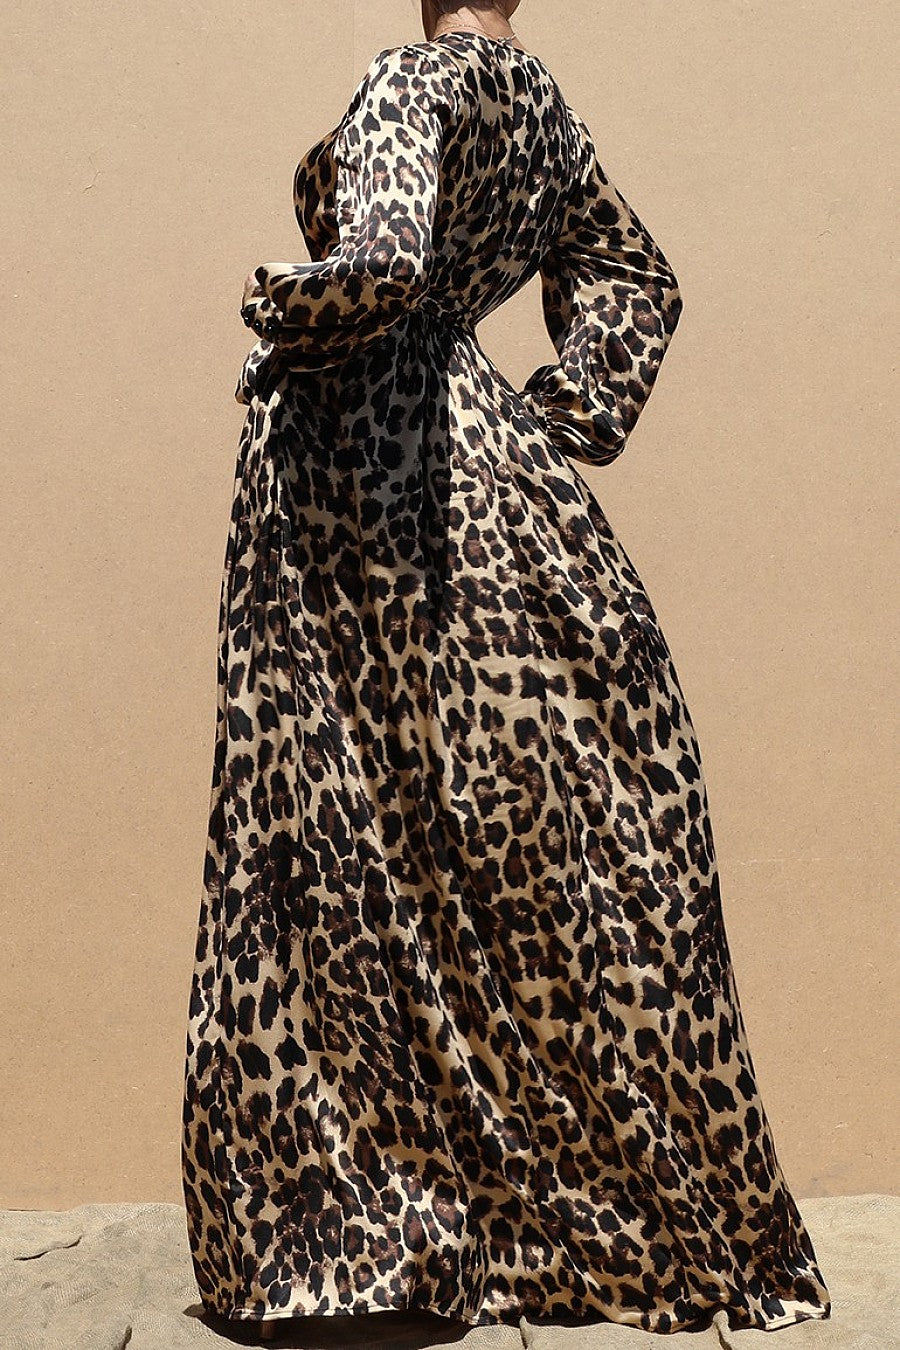 The Leopard Satin Maxi Dress